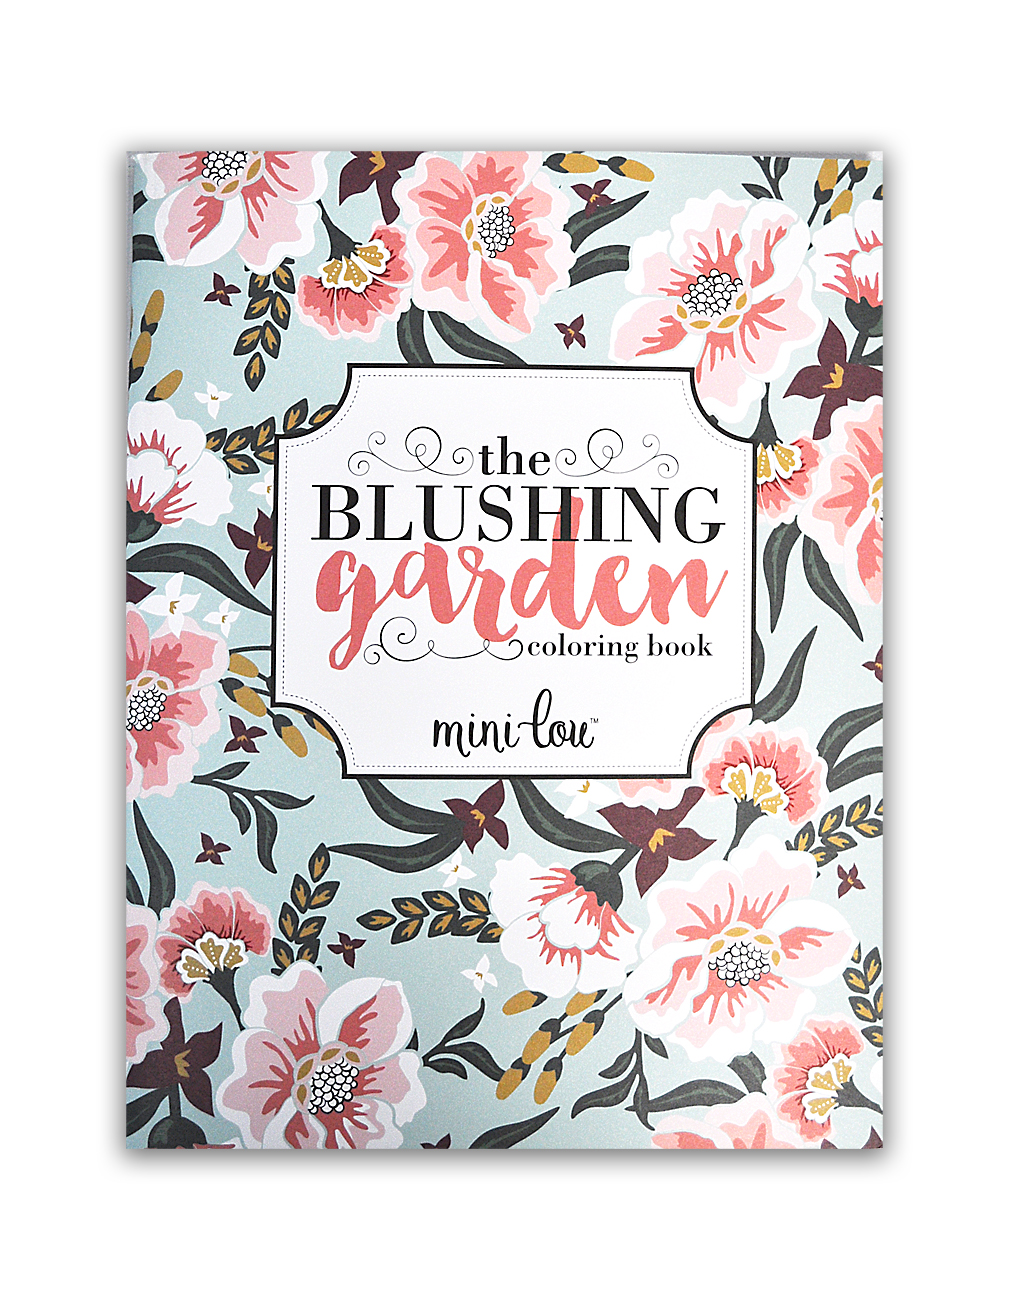 MiniLou Blushing Garden Coloring Book